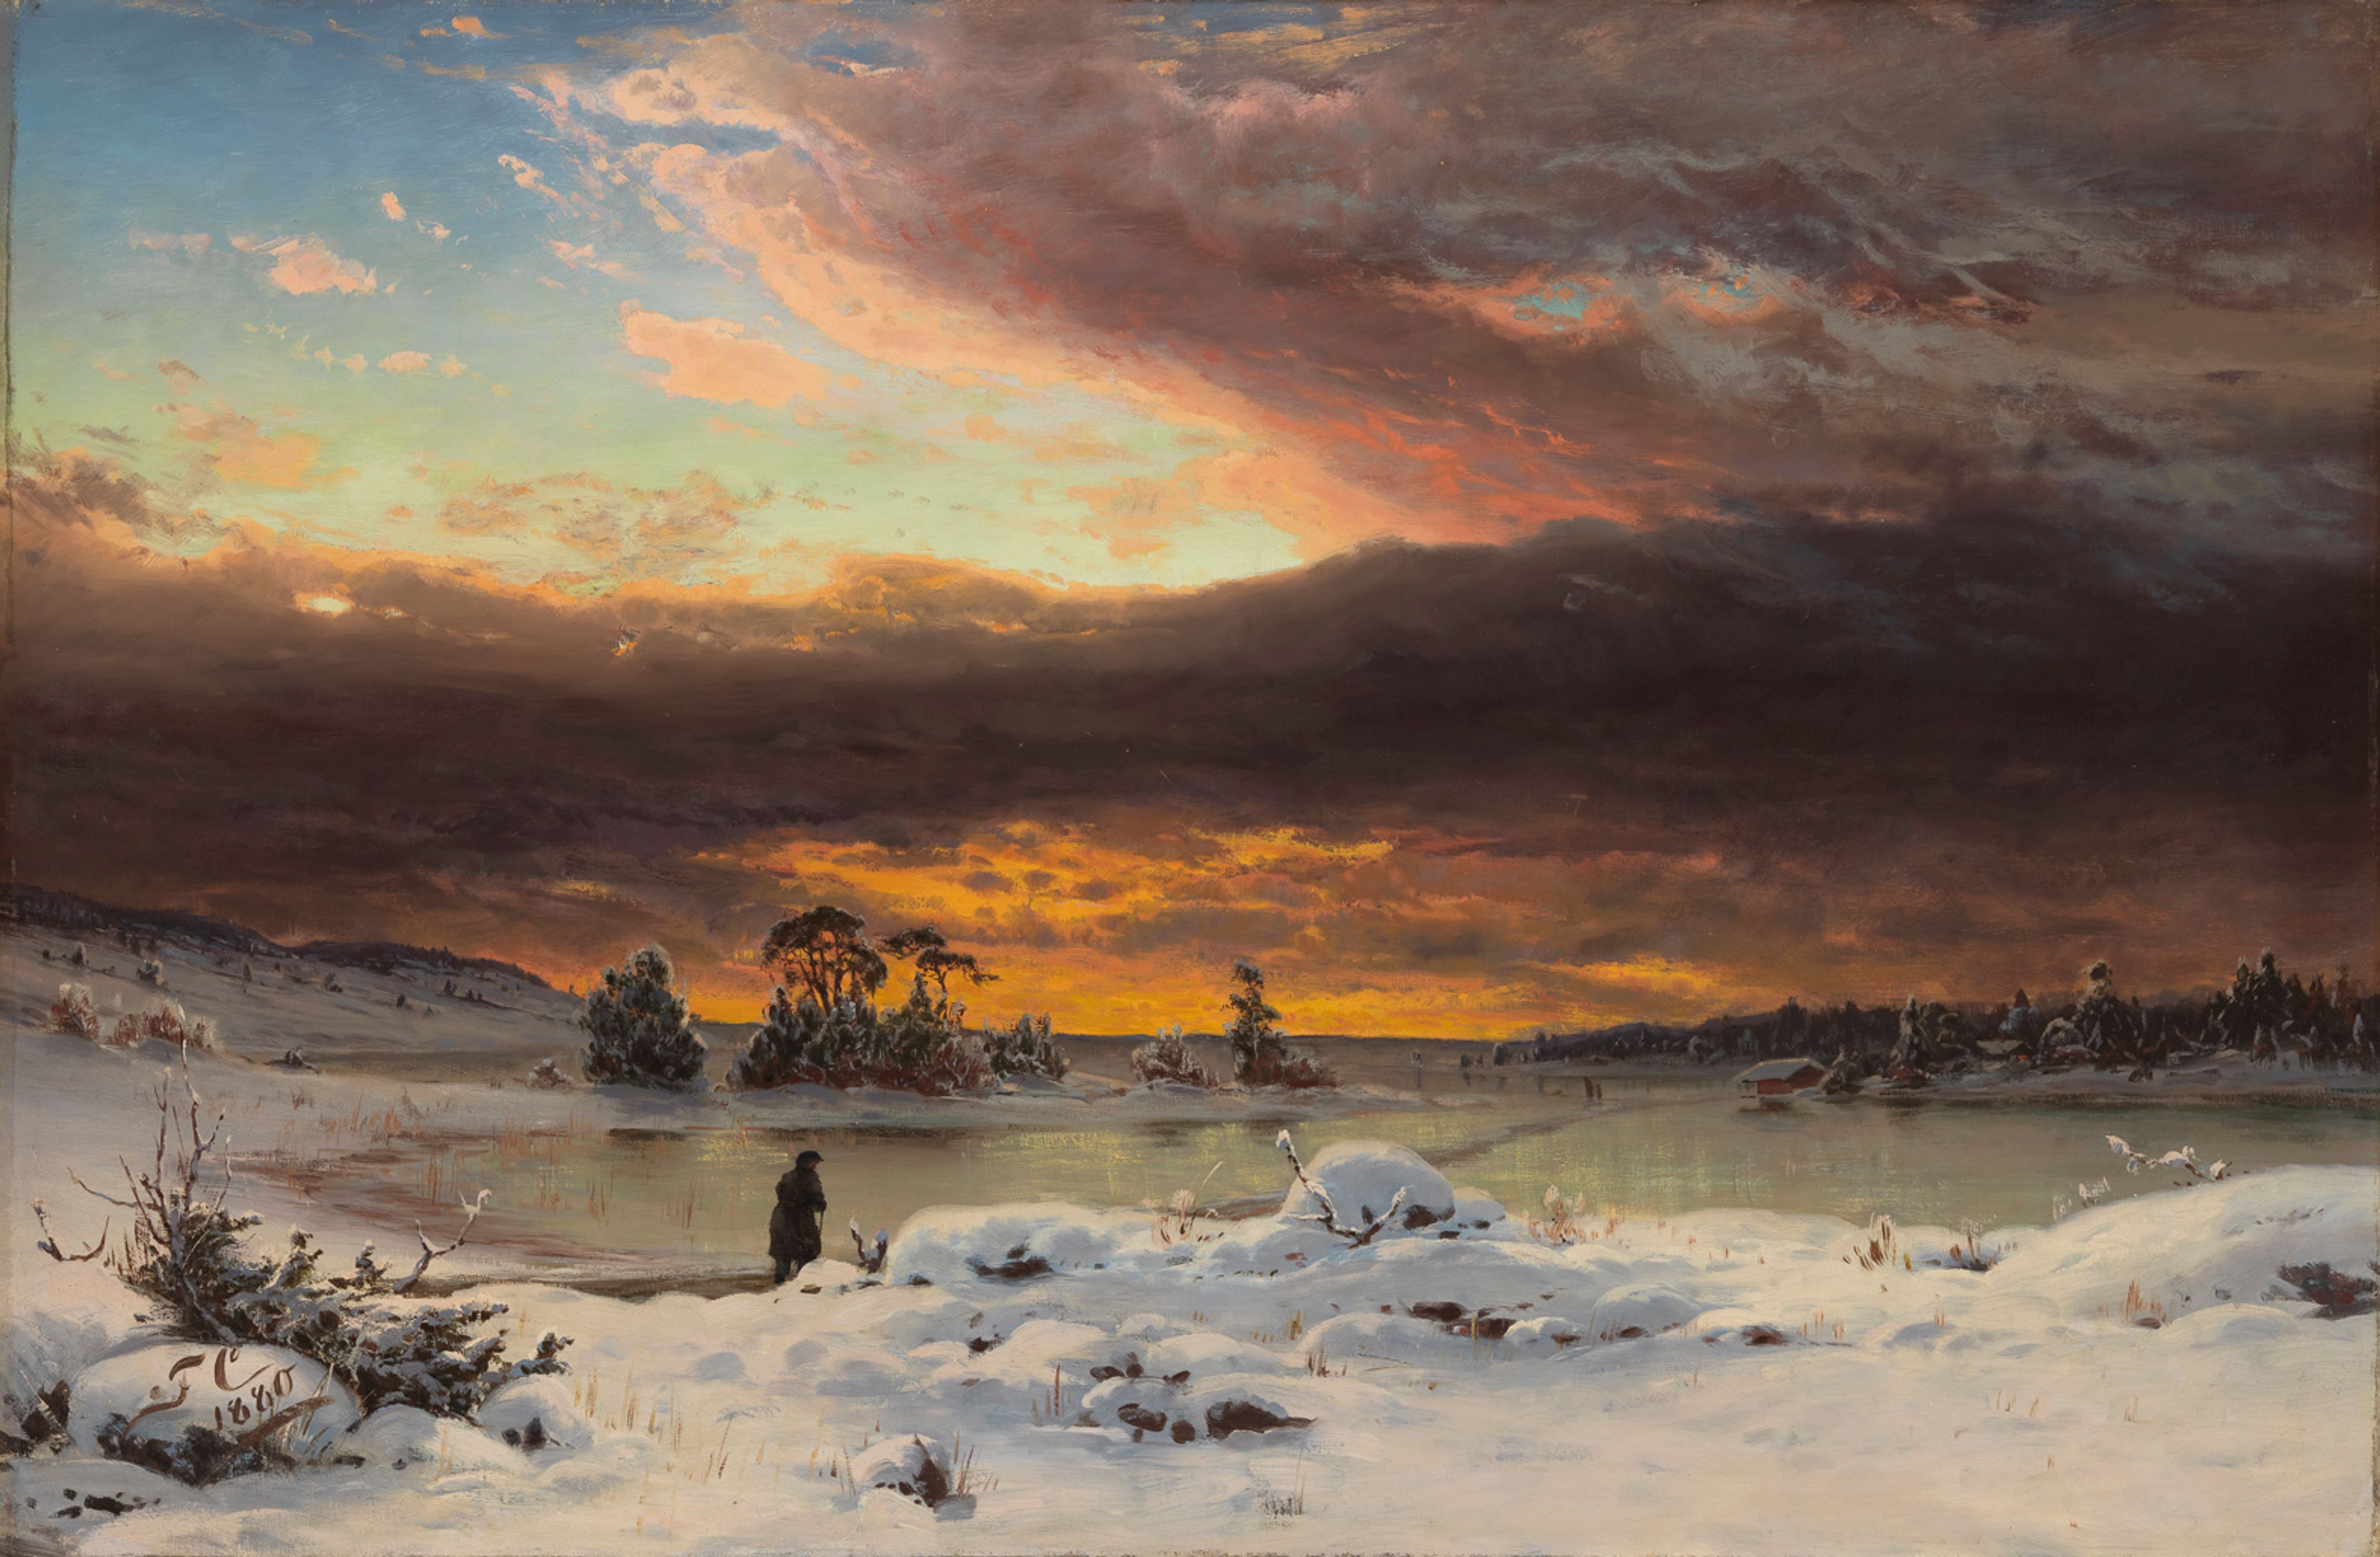 겨울 풍경, 저녁의 하늘(Winter Landscape, Evening Atmosphere) by Fanny Churberg - 1880 - 73.5 x 105 cm 